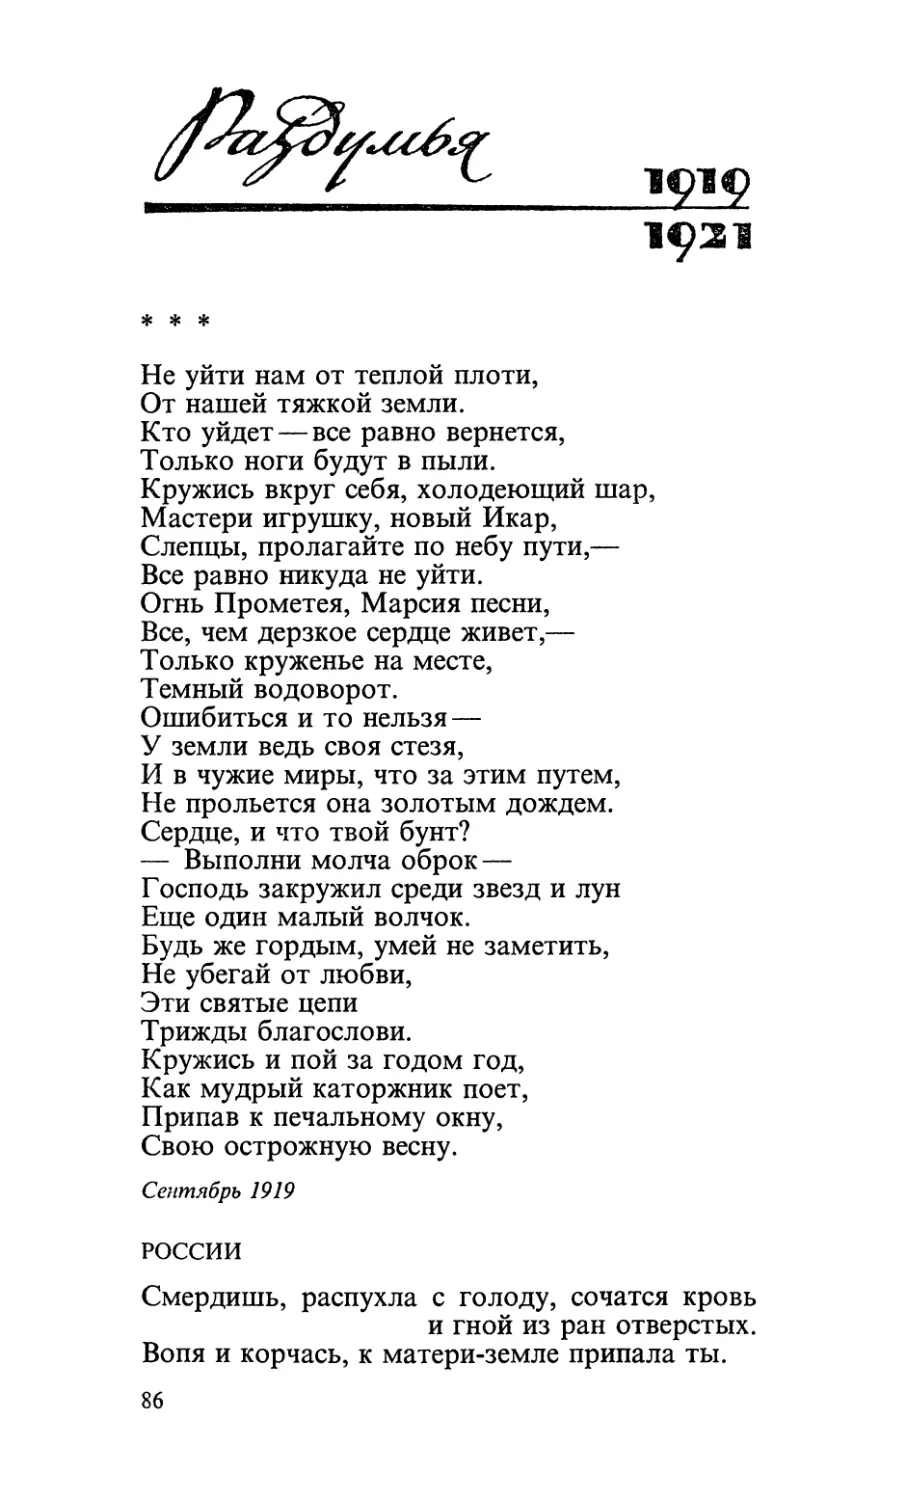 Раздумья (1919—1921)
«Не уйти нам от теплой плоти...»
России